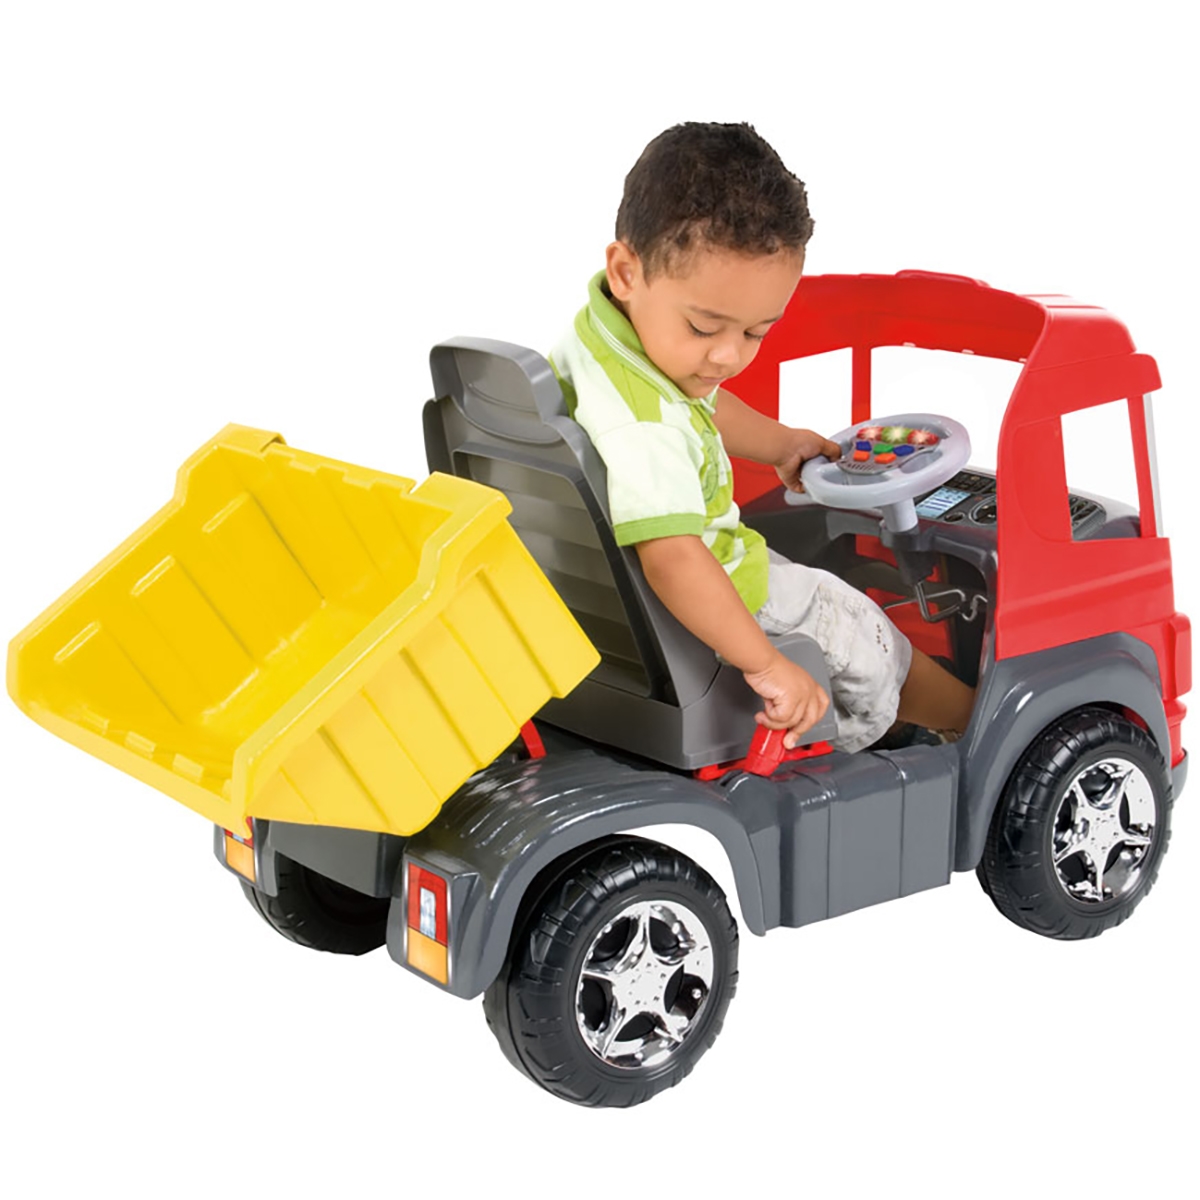 Caminhão de Brinquedo Magic Toys Truck 9300 Plástico com Pedal